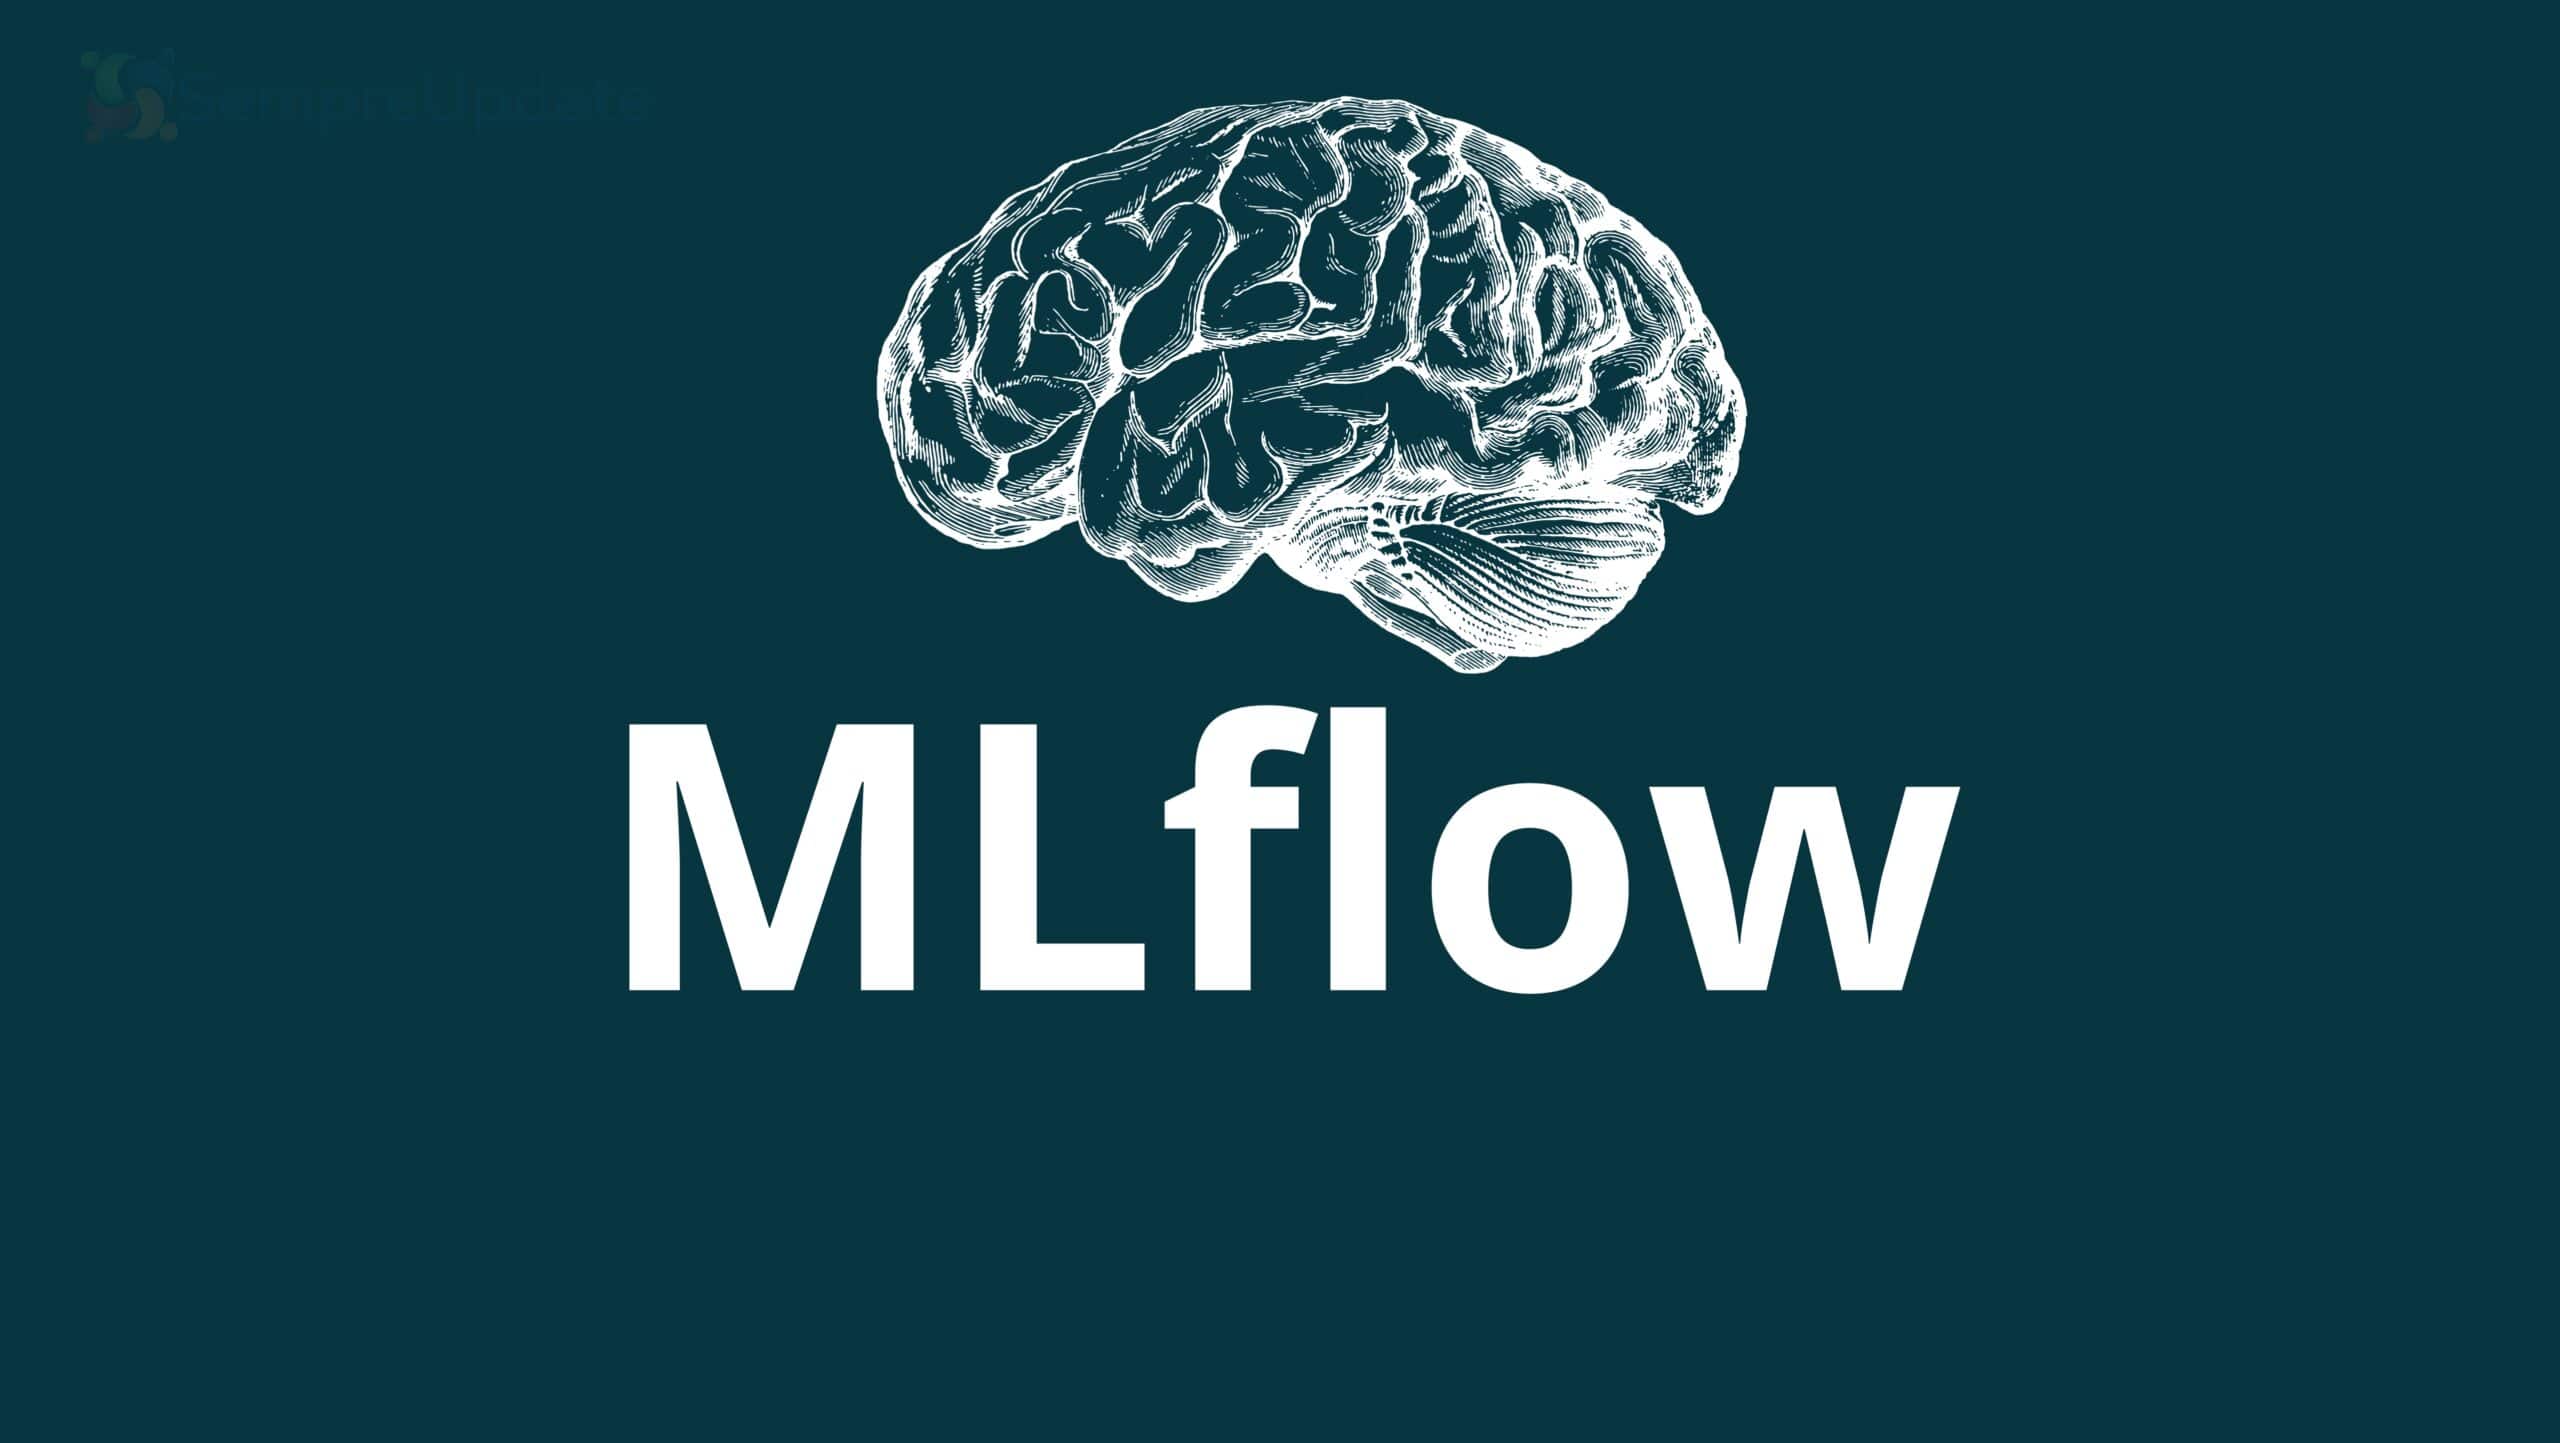 MLflow: Uma Plataforma Abrangente para Gerenciar o Ciclo de Vida do Aprendizado de Máquina